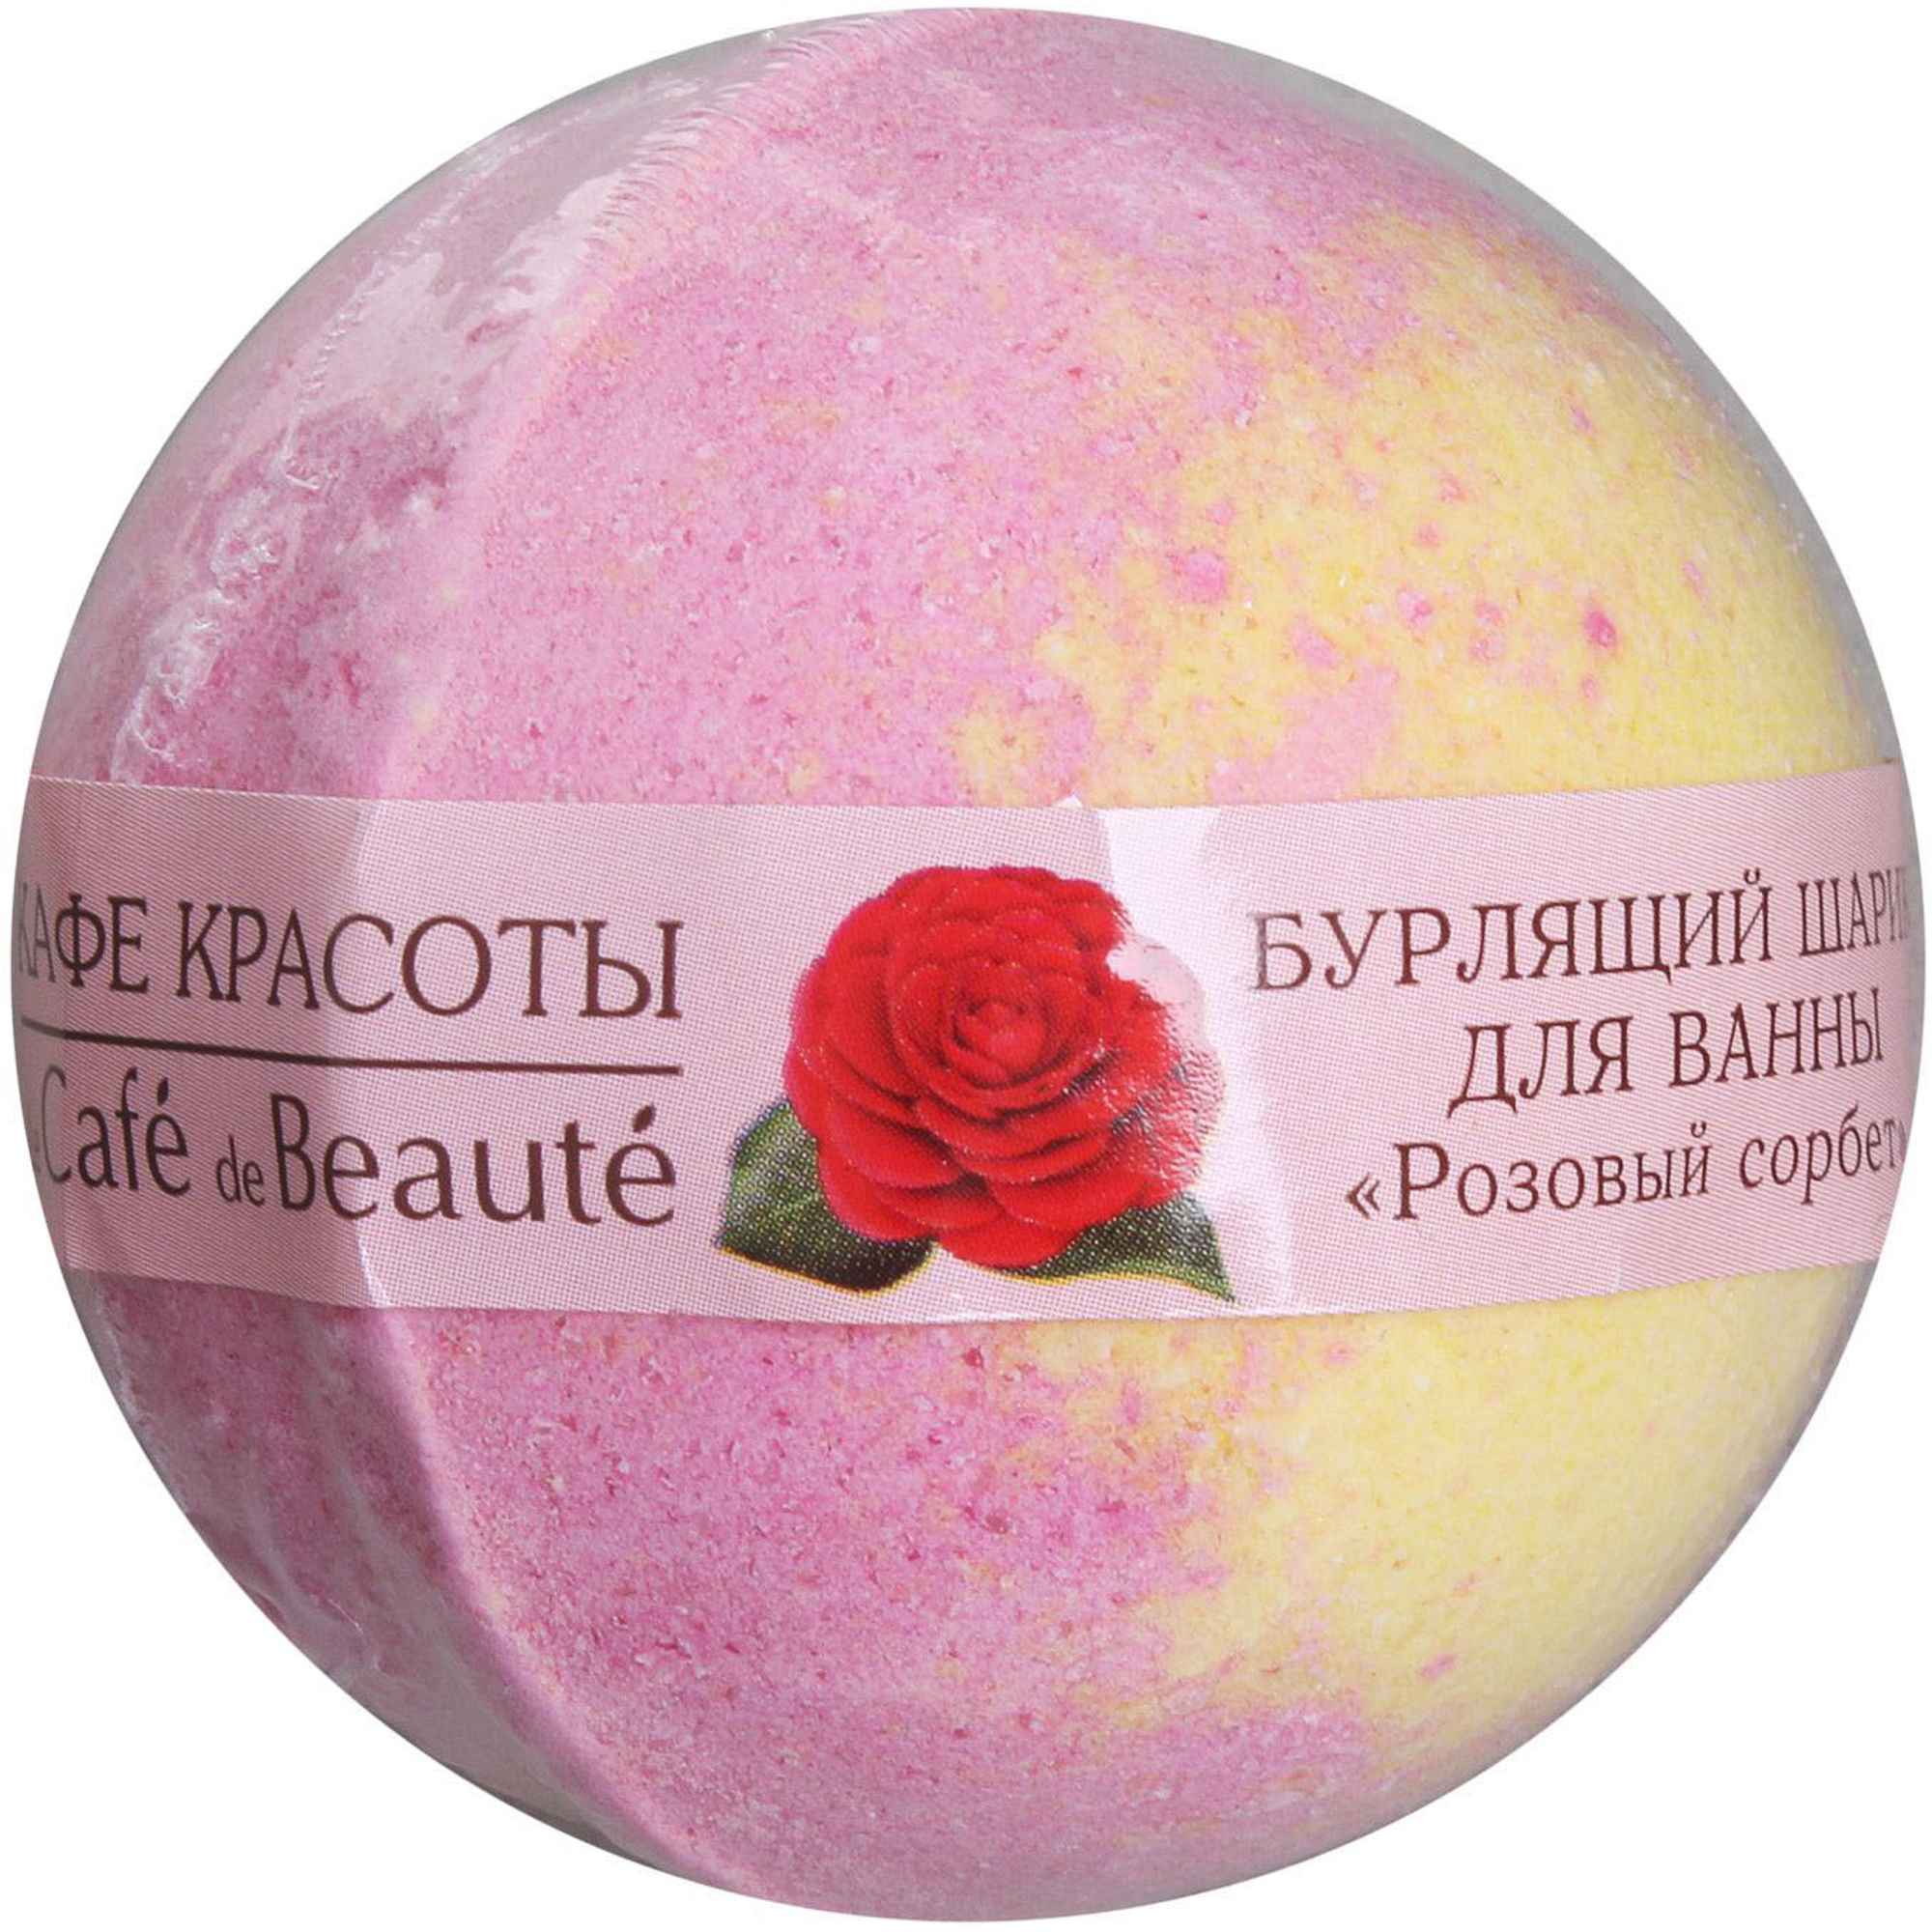 Шар для ванны Кафе Красоты Розовый сорбет 120 г бурлящий шарик для ванн ягодный сорбет 100 гр кафе красоты